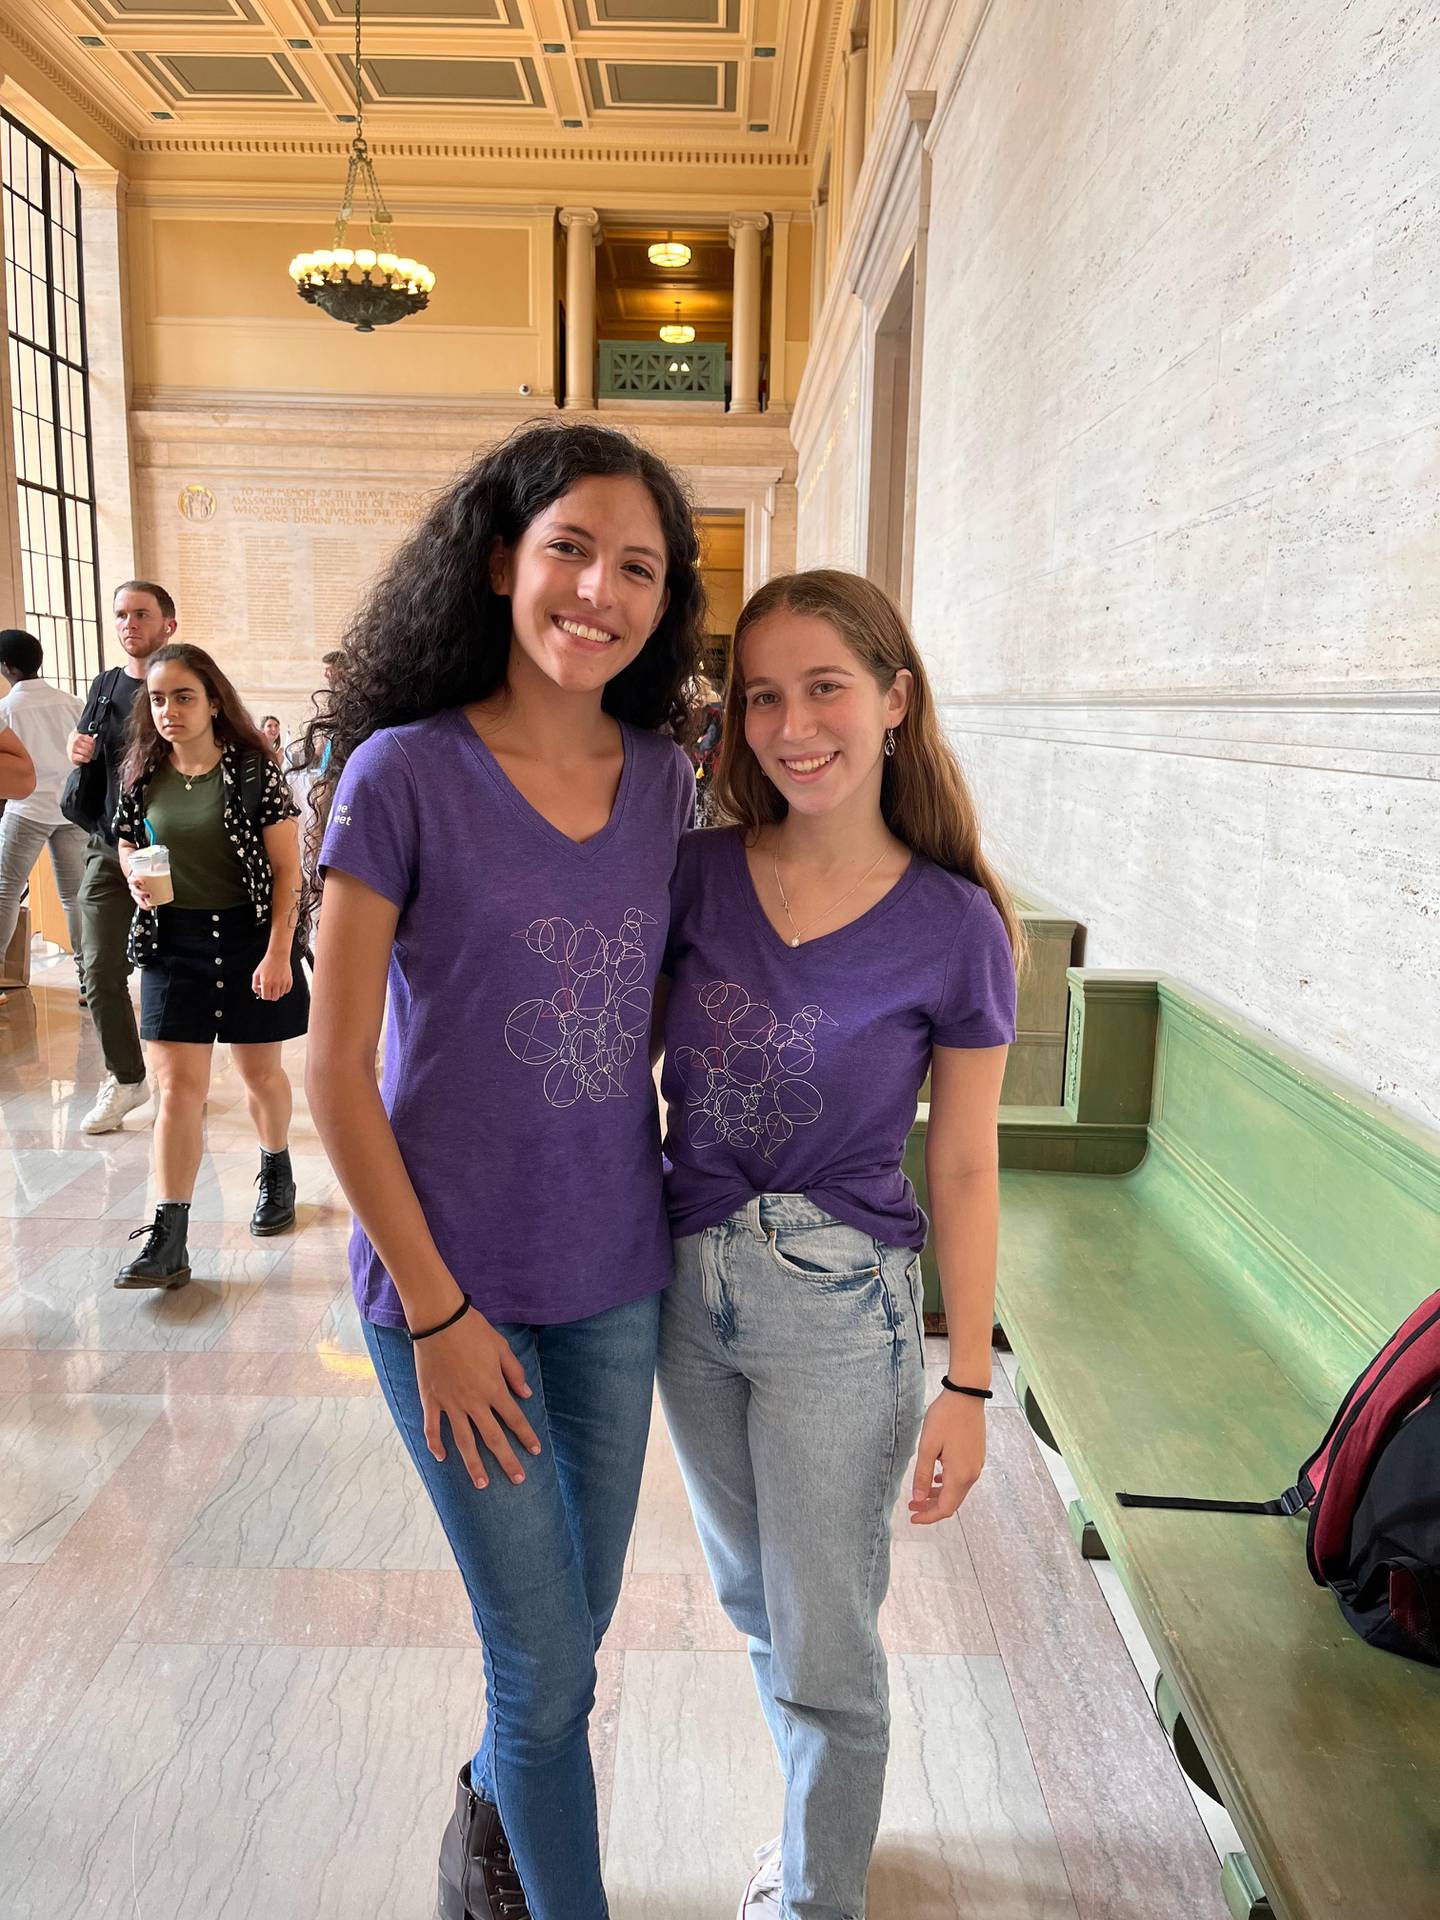 Kristel Acuña (izquierda) y Nicole Lipschitz se conocieron gracias a las matemáticas y esto las impulsó a conseguir beca en el MIT.

Fotografía: Cortesía